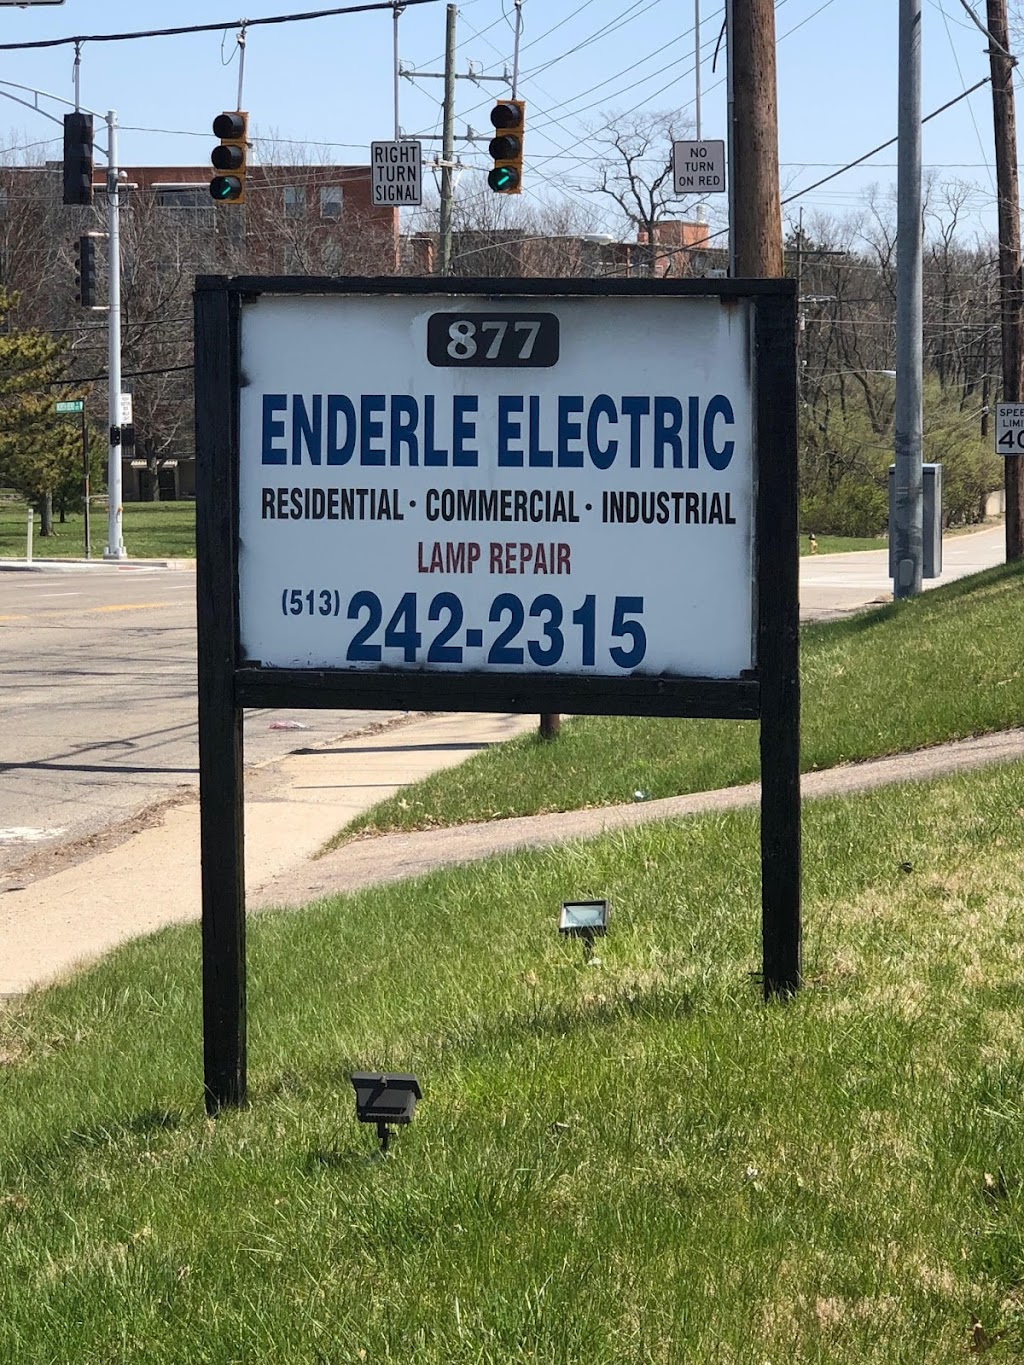 Enderle Electric | 877 W North Bend Rd, Cincinnati, OH 45224 | Phone: (513) 242-2315